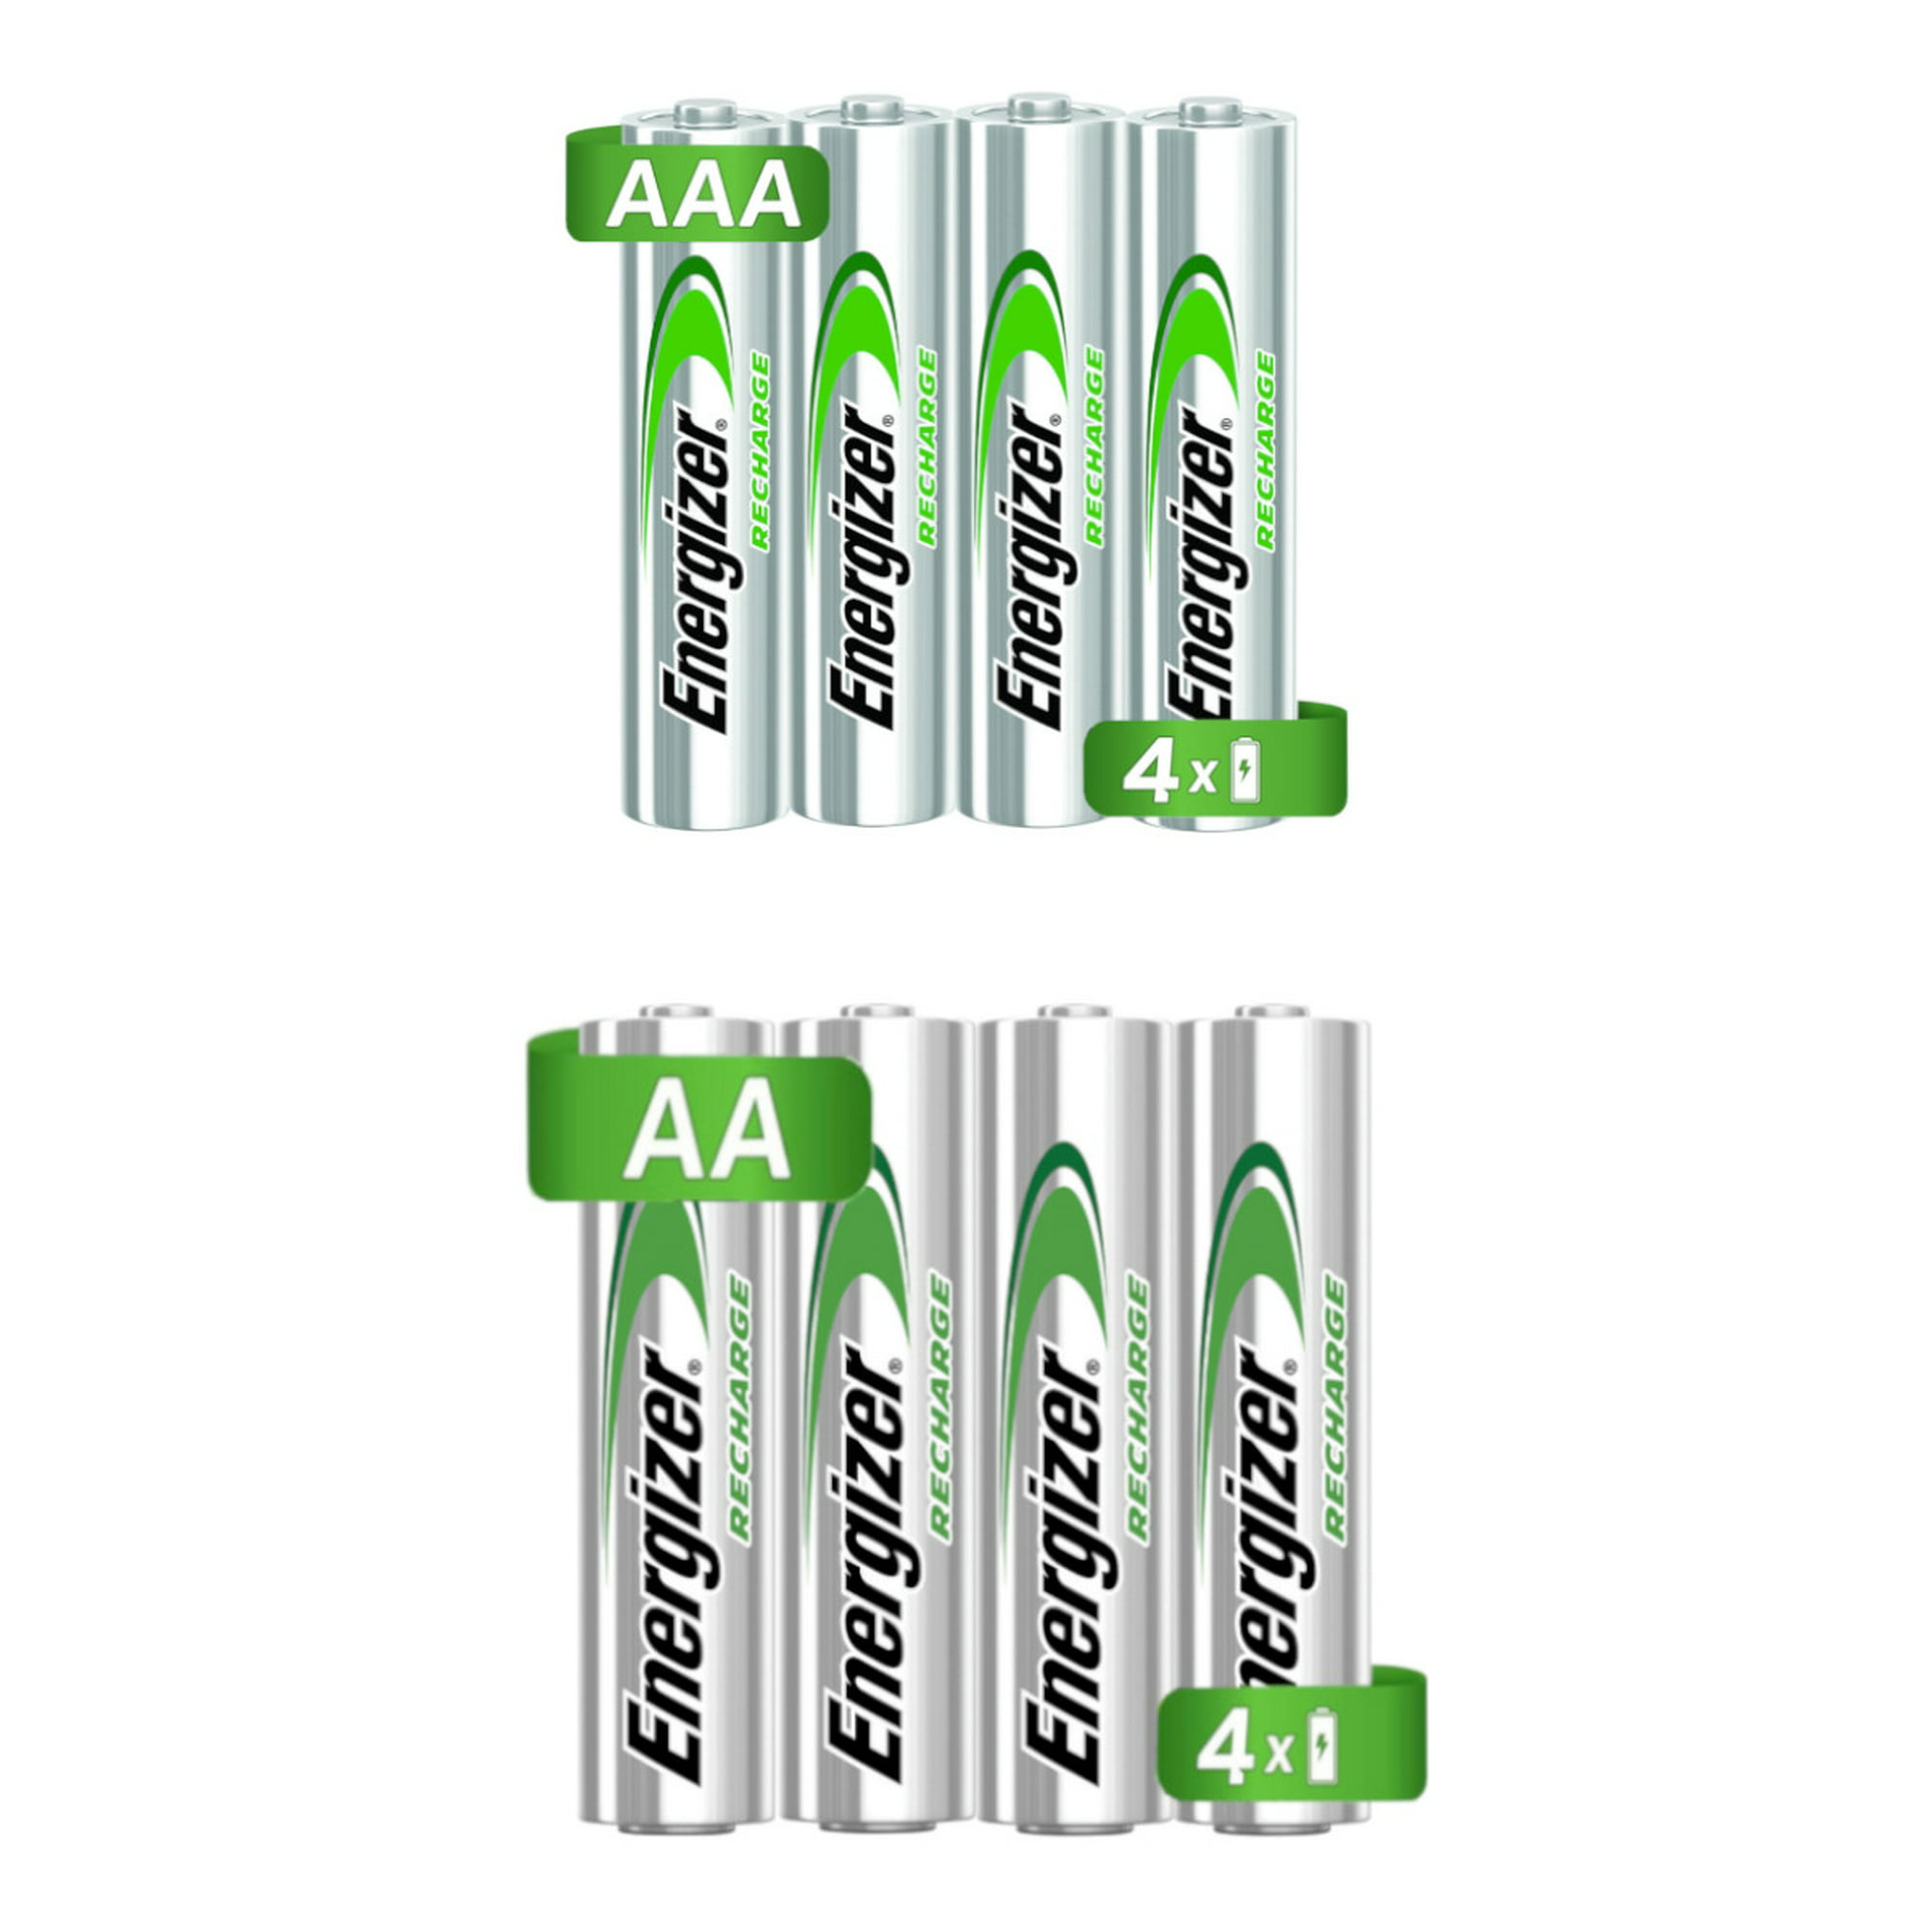 Pilas baterías recargables energizer 4 aa + 4 aaa (Total 8pz)